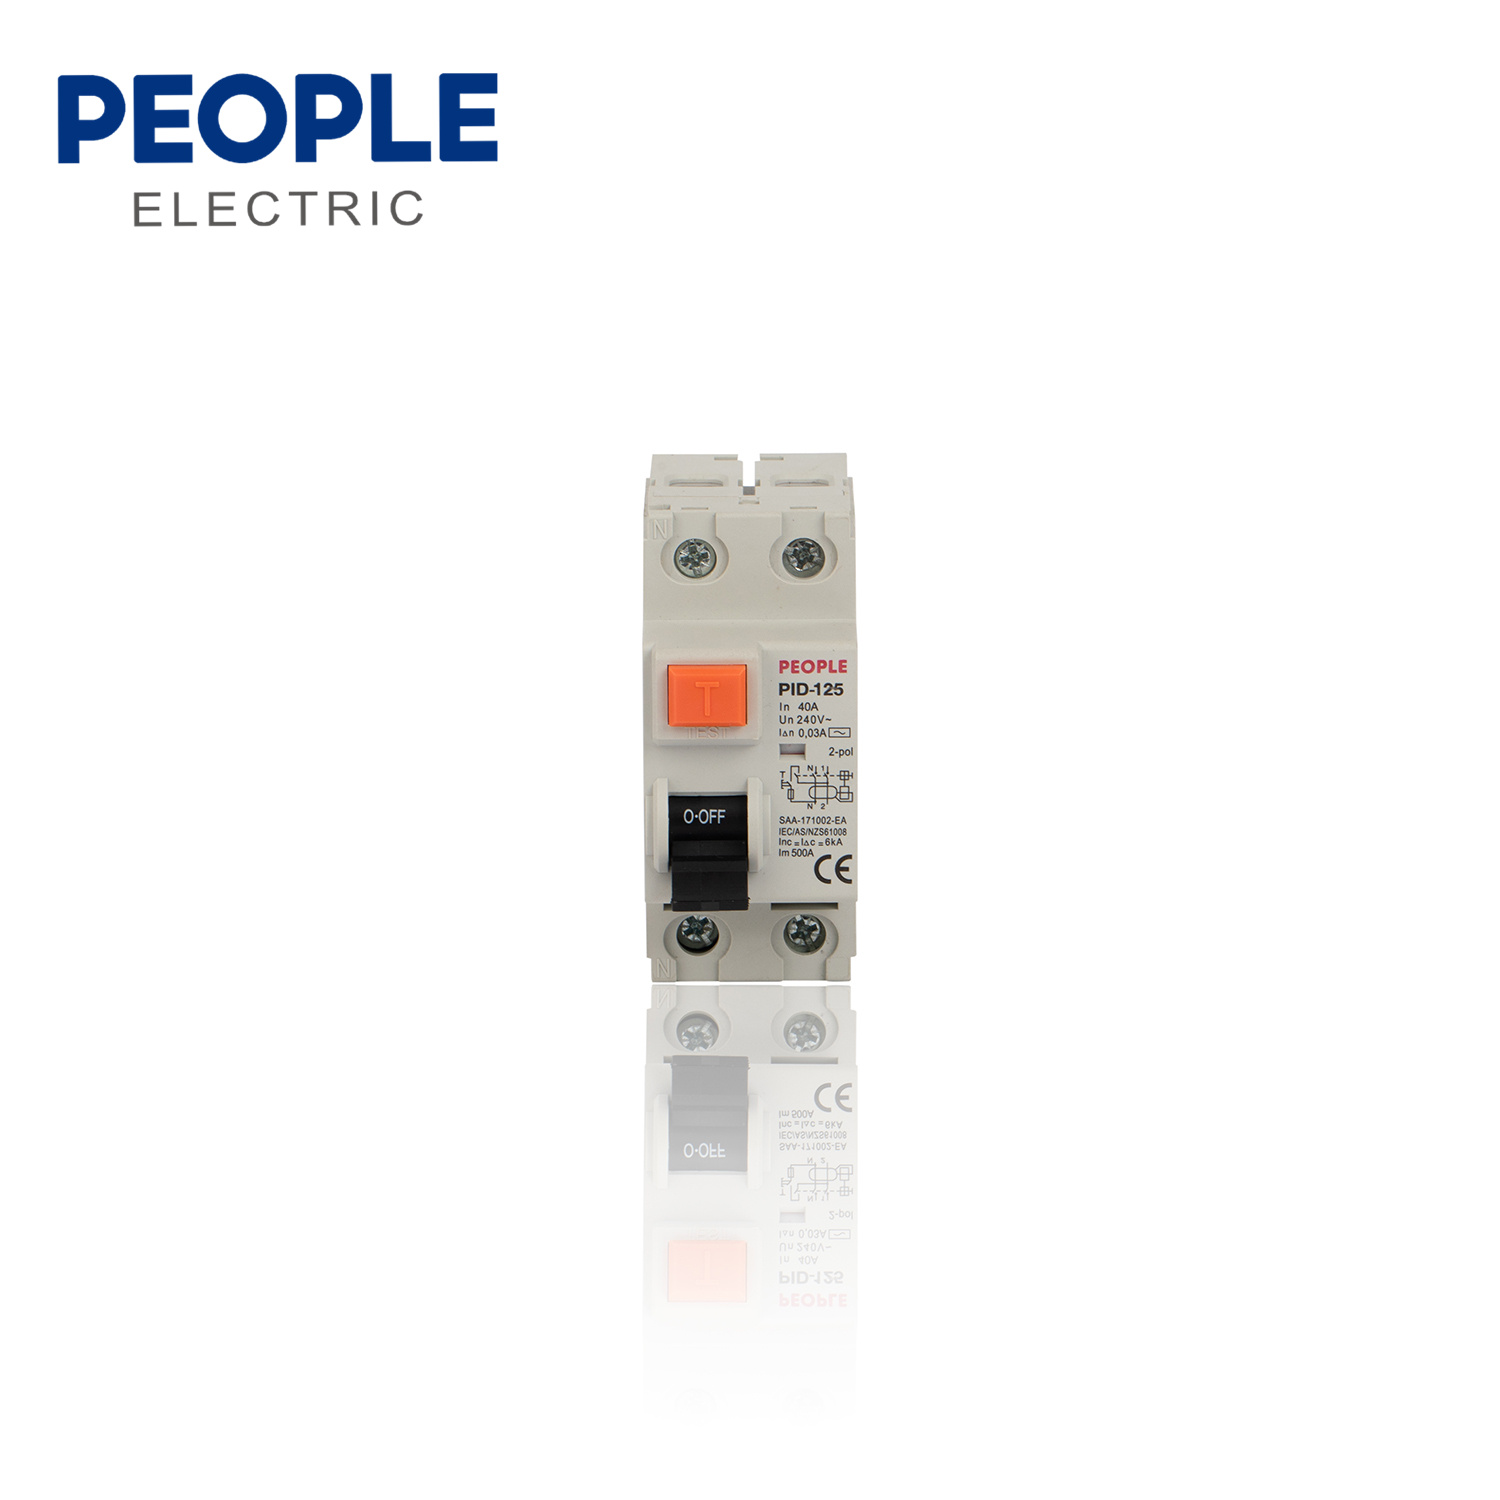 Interruttore di corrente residuale serie PID-125 - Tipu manuale